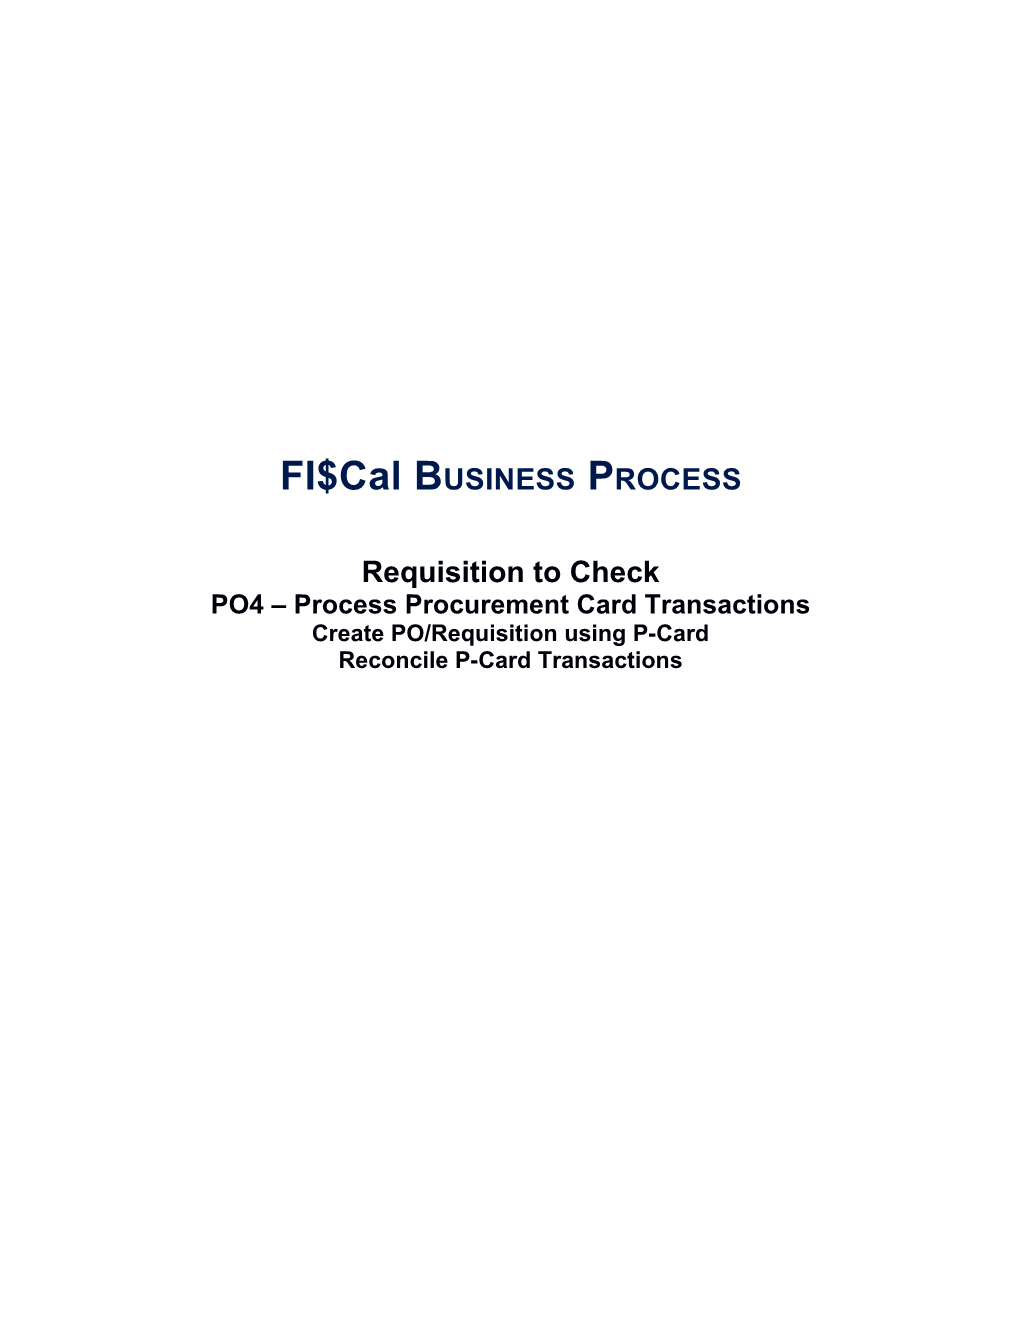 PO4 Process Procurement Card Transactions